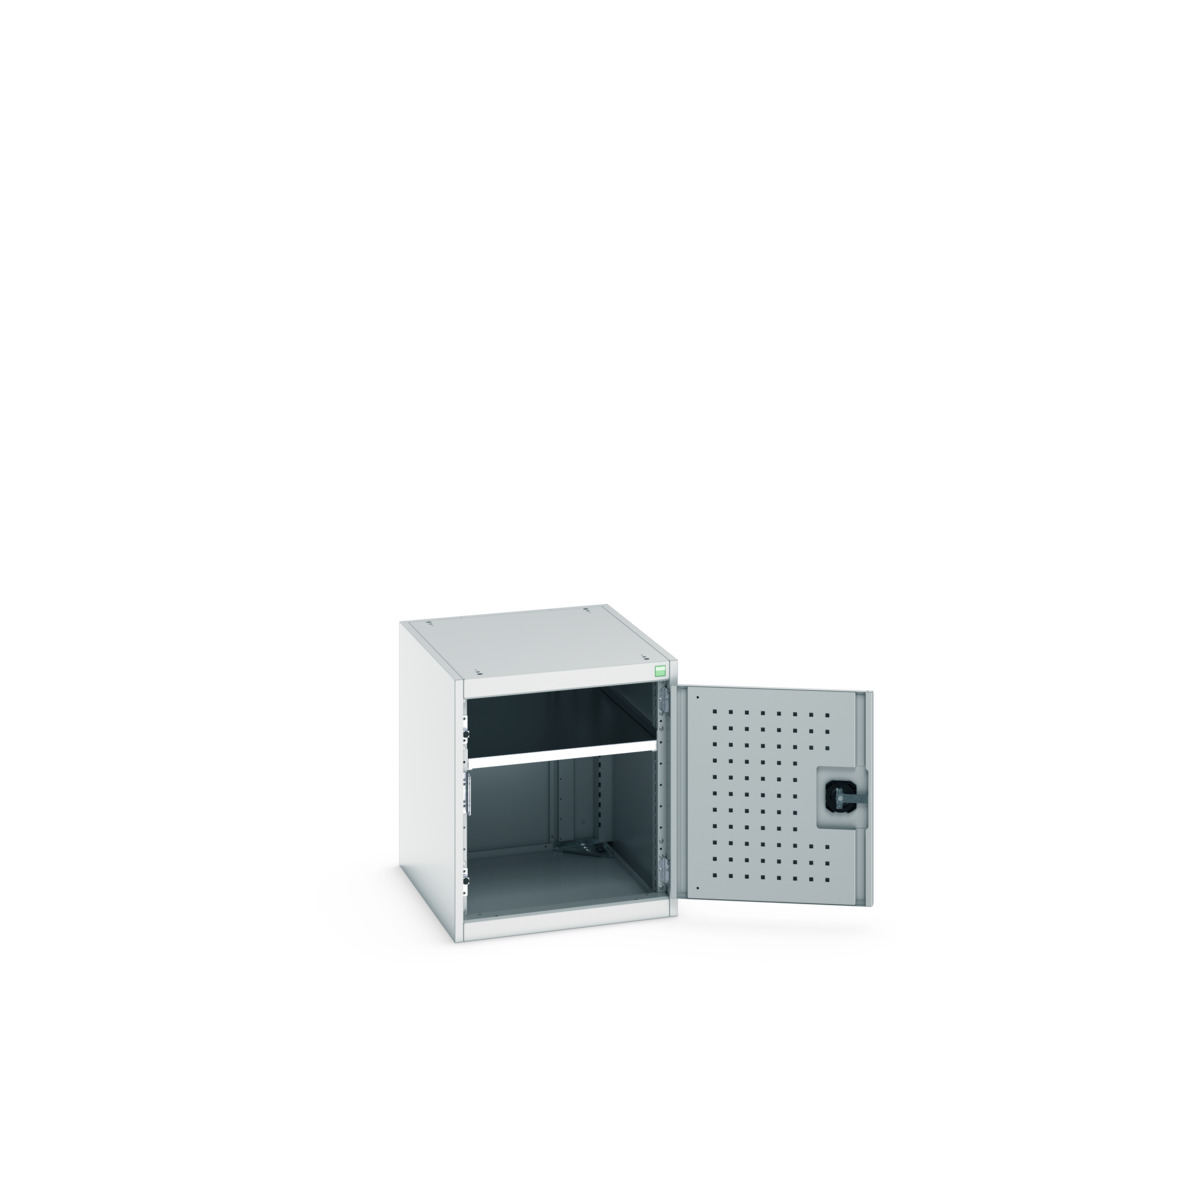 40018110.16V - cubio cupboard